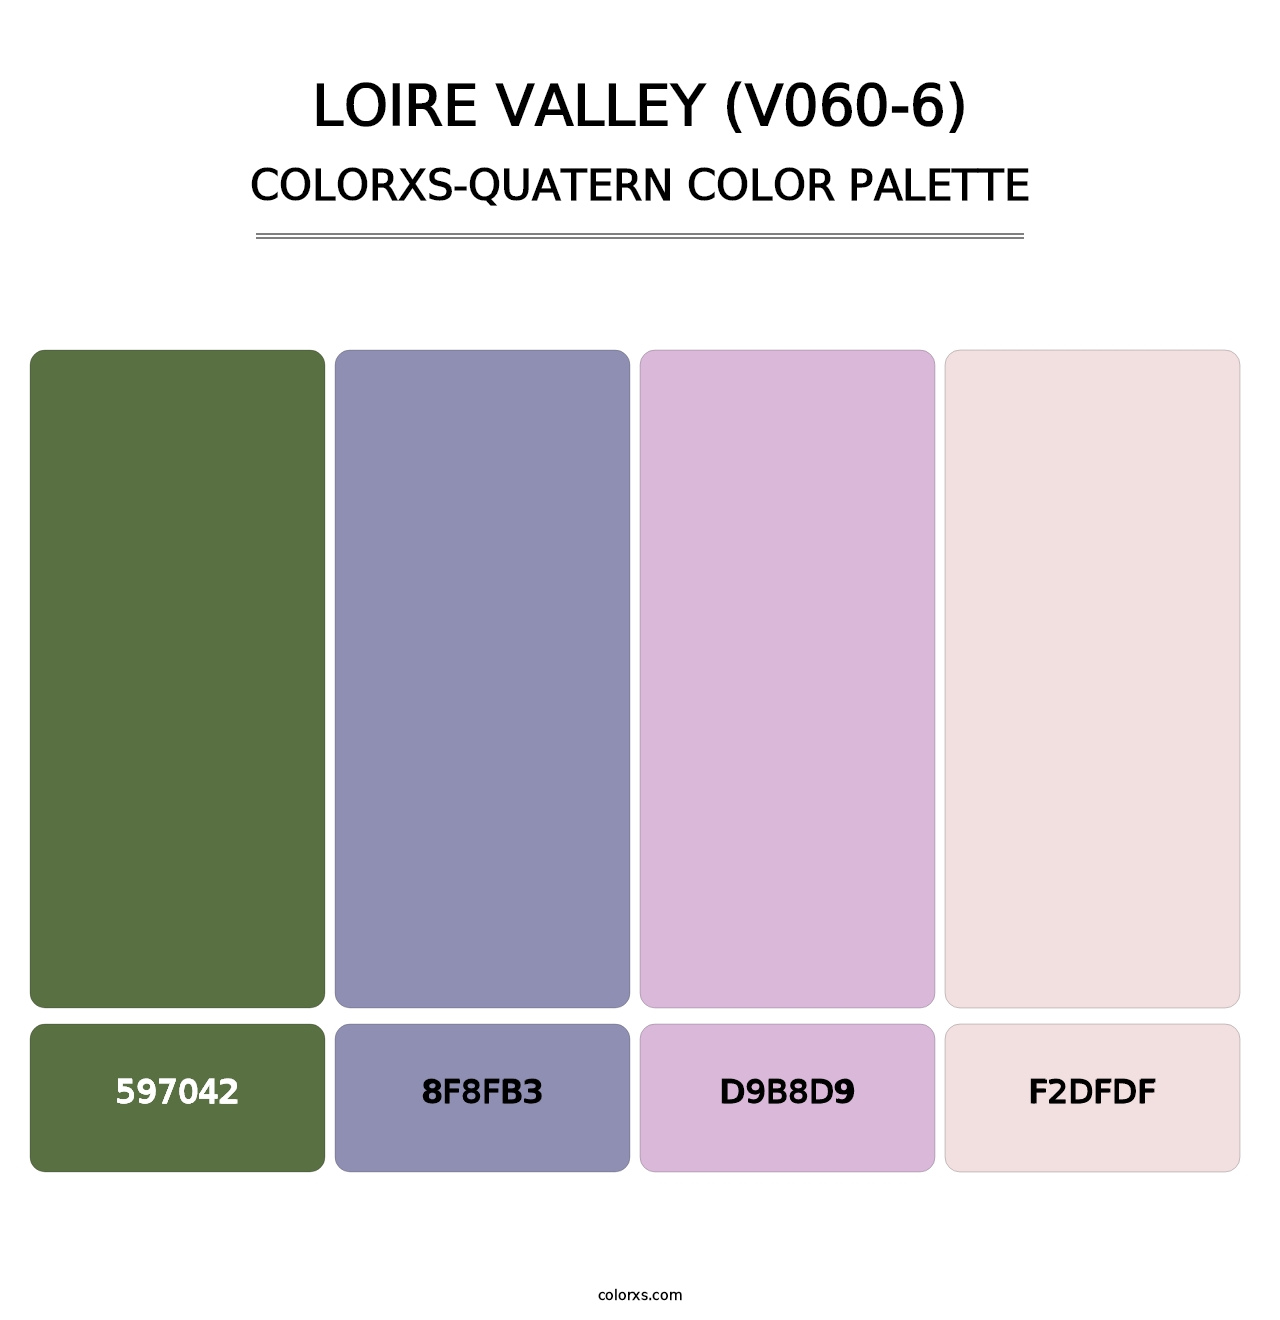 Loire Valley (V060-6) - Colorxs Quatern Palette